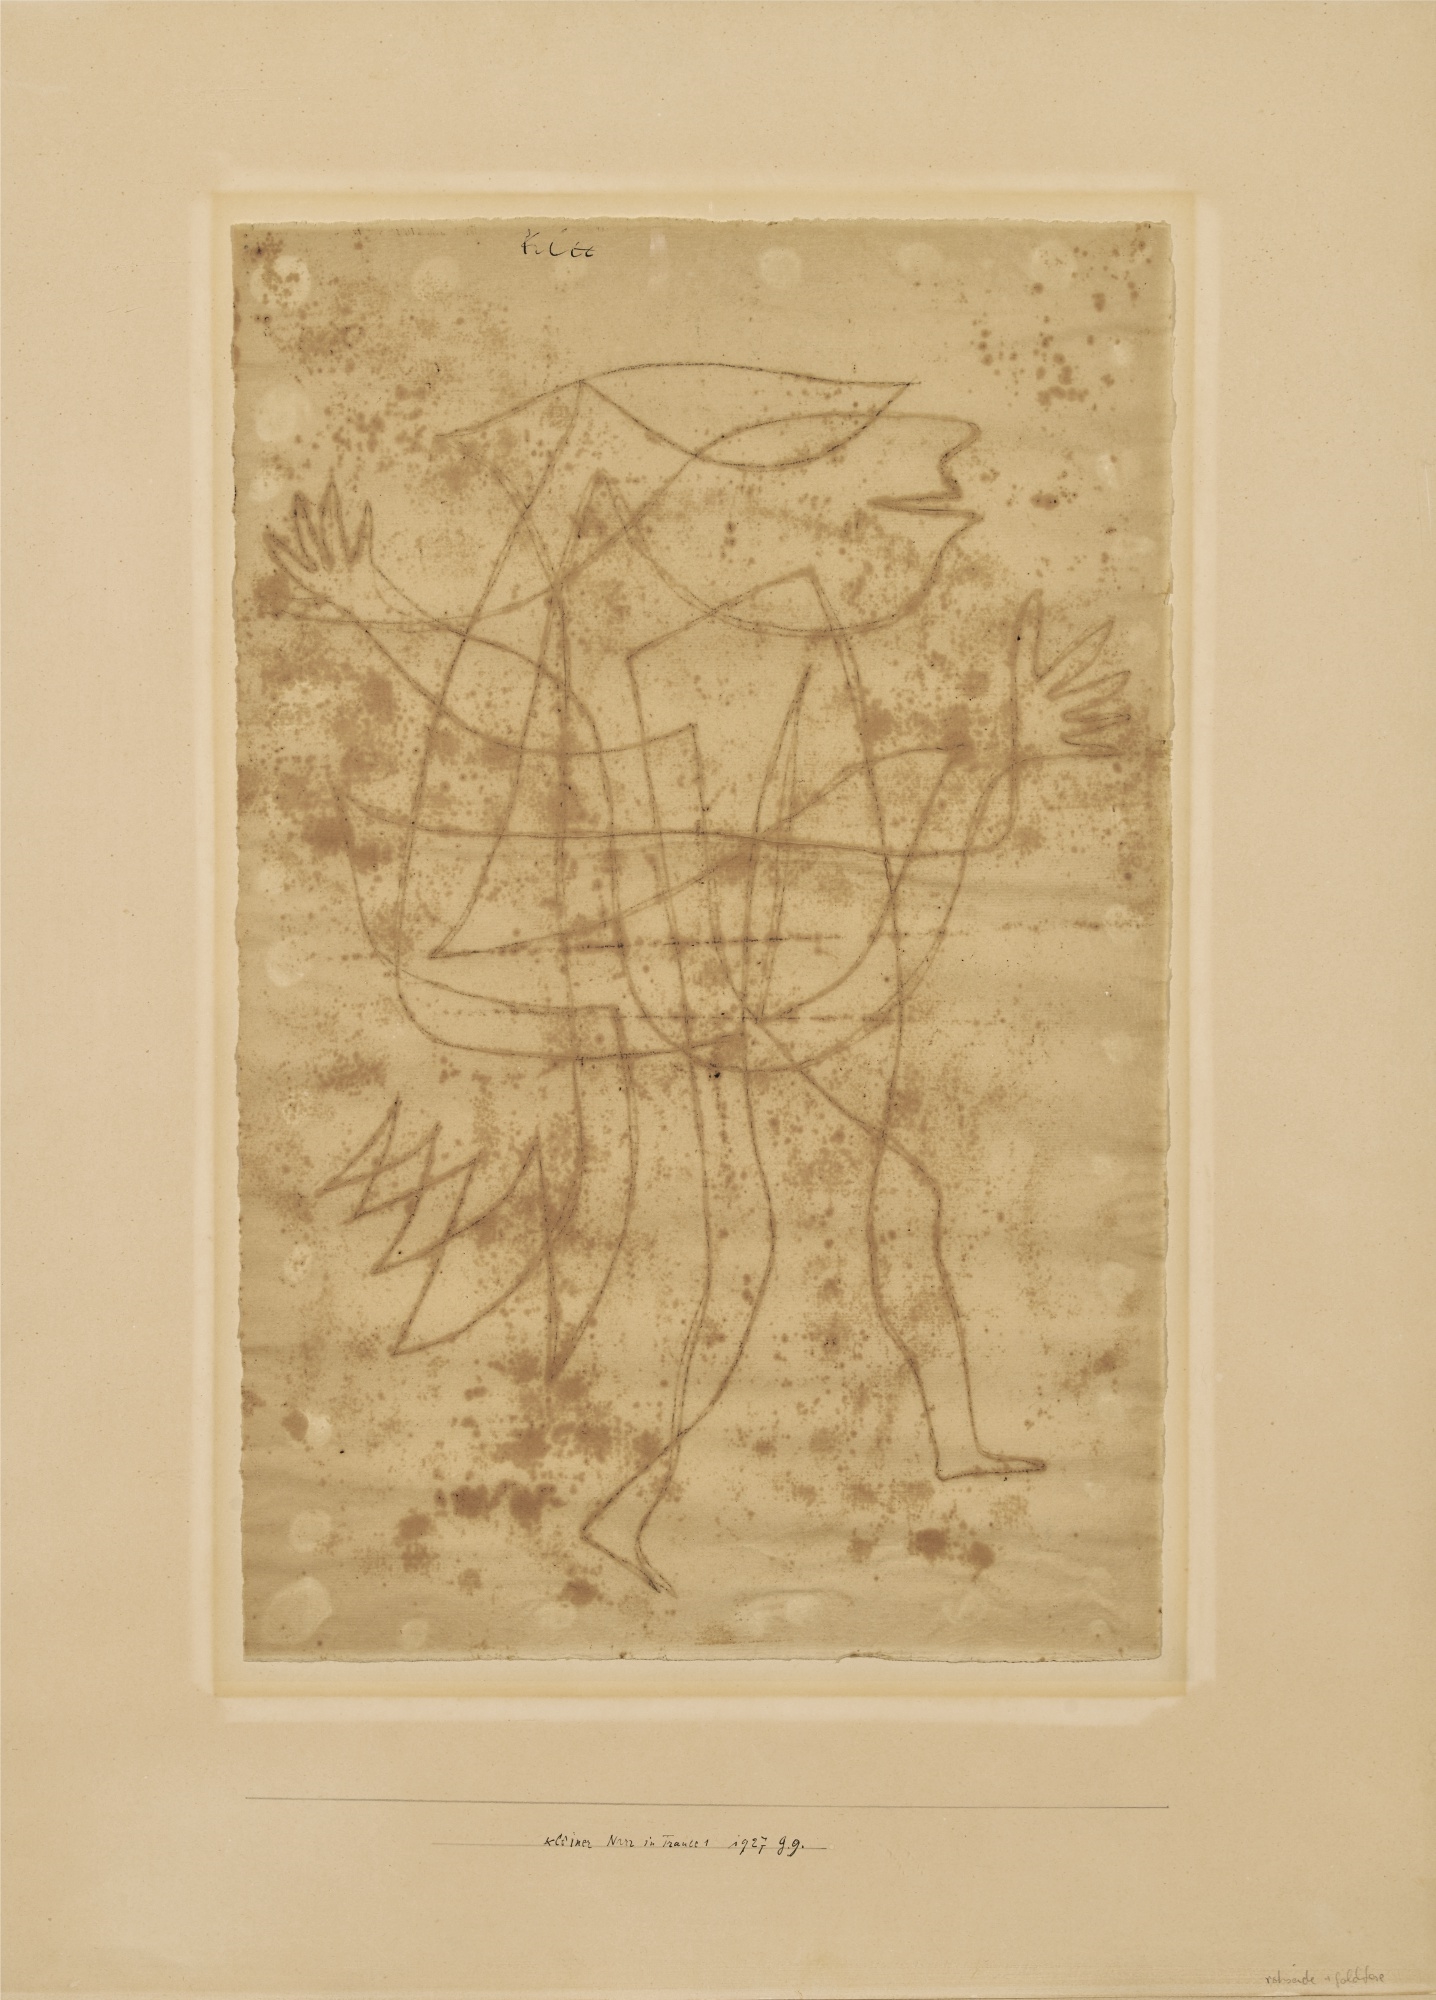 KLEINER NARR IN TRANCE, 1927 by Paul Klee, 1927